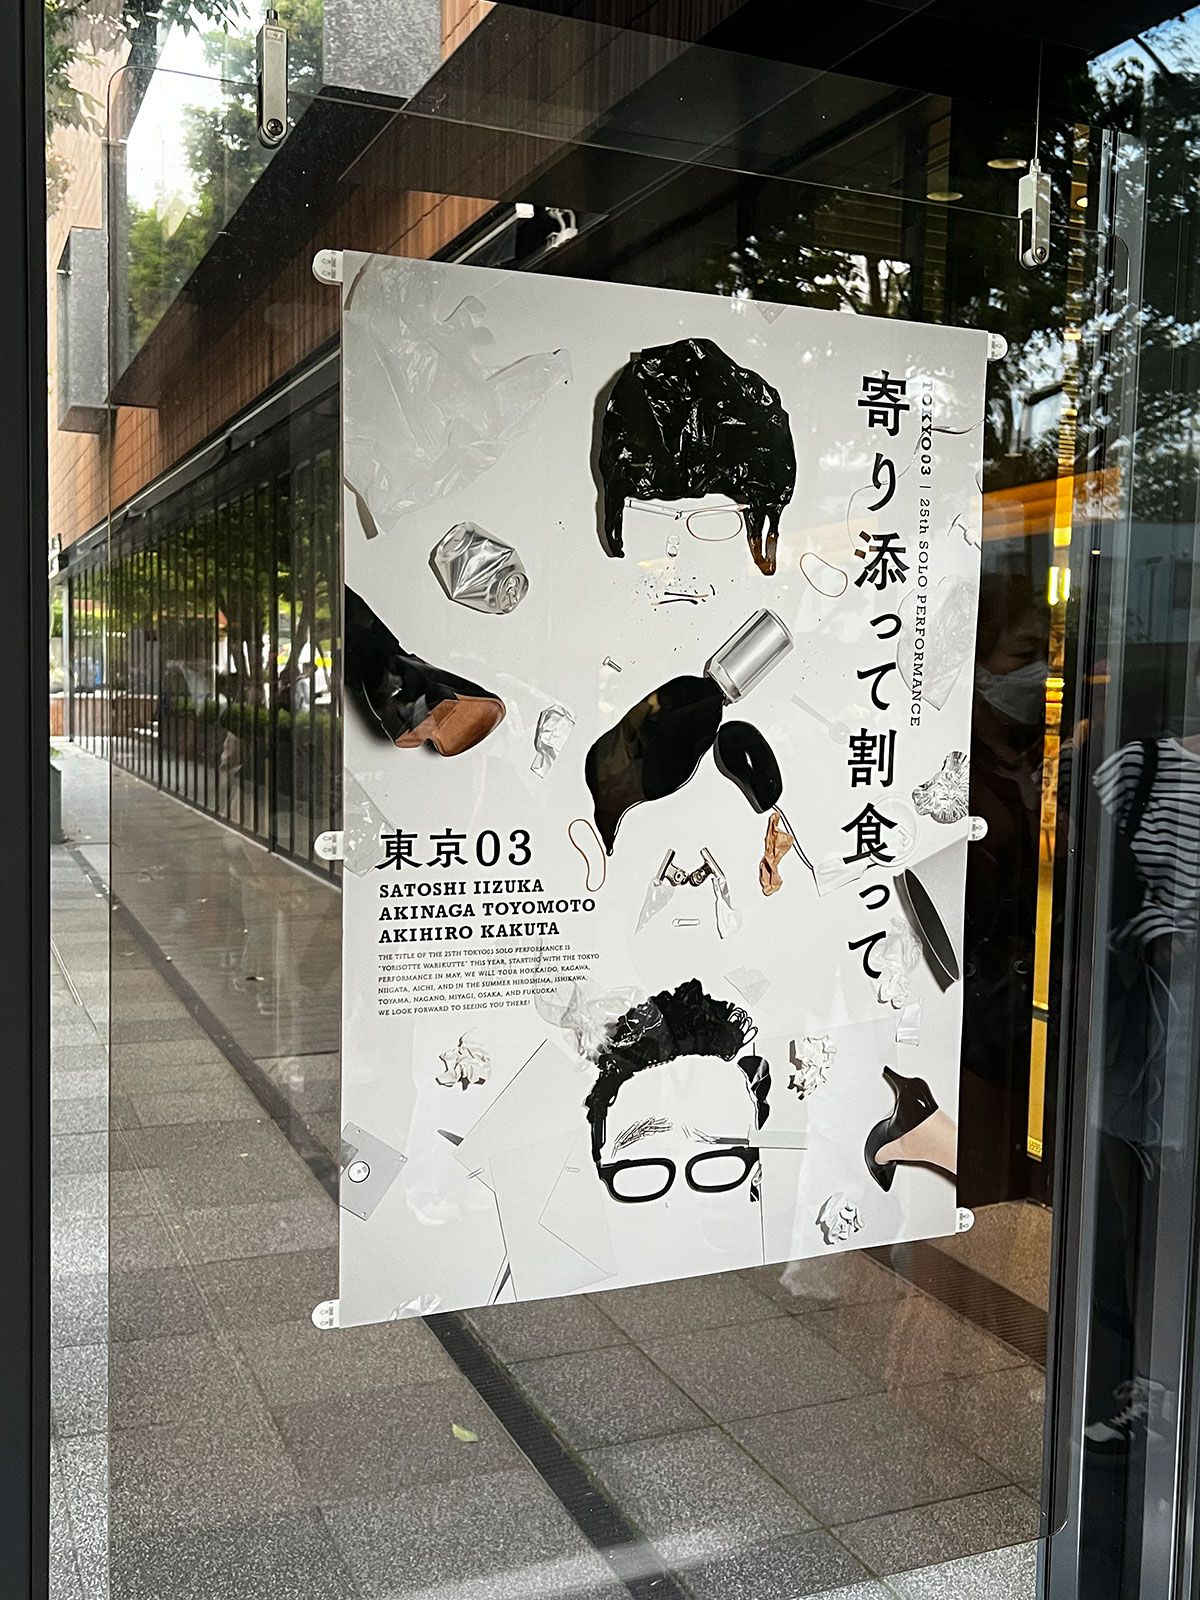 日本青年館ホール入口前に掲示された『第25回東京03単独公演「寄り添って割食って」』ポスター。